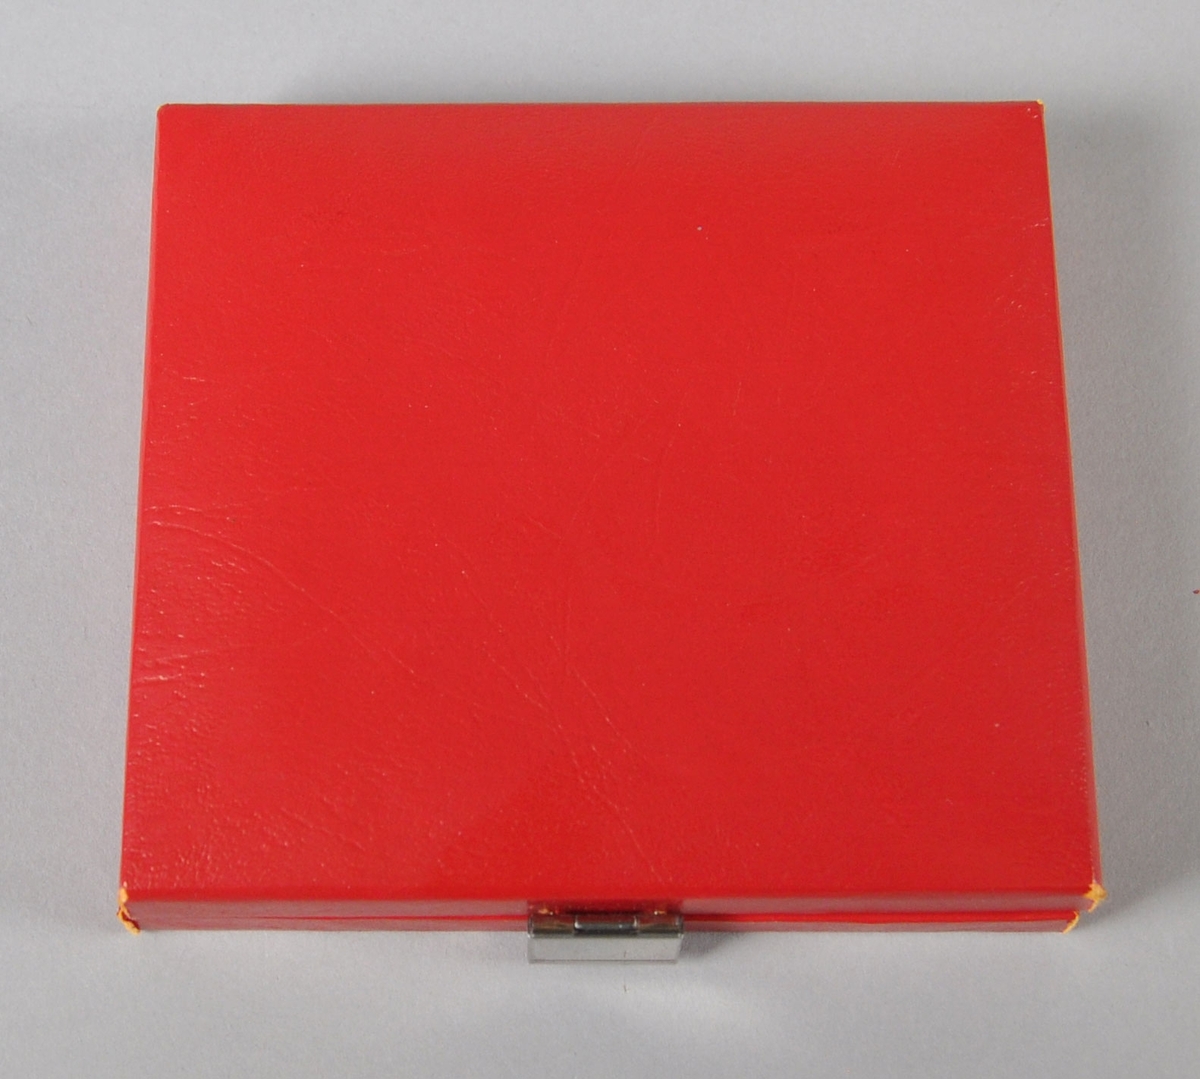 Merke (eller plakett) av metall med to hvite striper og en stjerne på rødt felt. Ligger i et rødt etui med rødt fløyelsfôr.